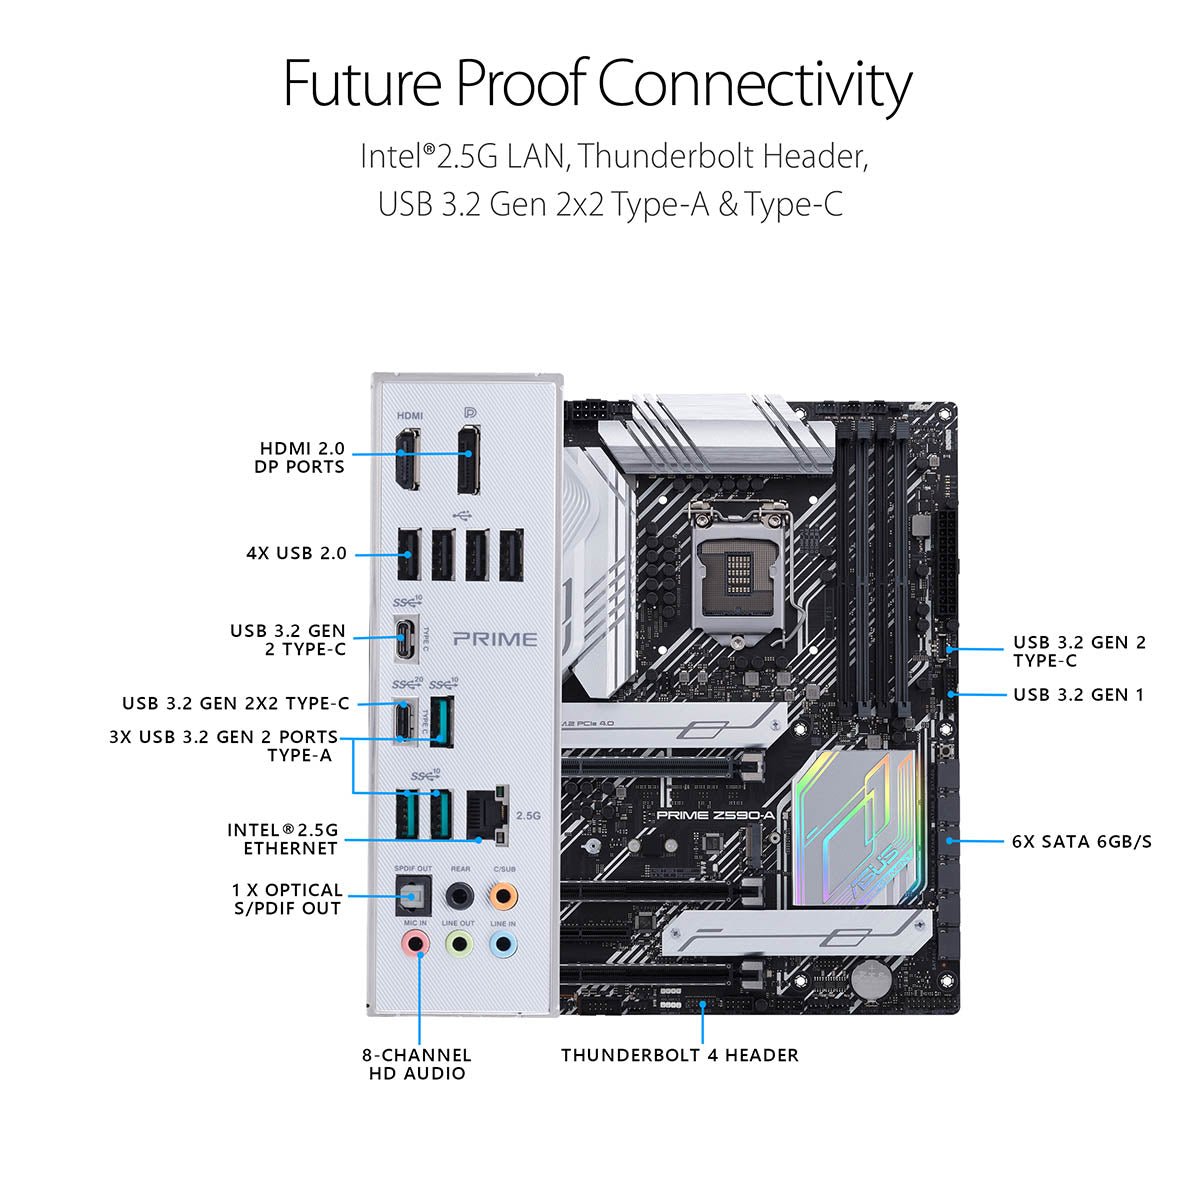 Asus Prime Z590-A ATX LGA 1200 मदरबोर्ड थंडरबोल्ट 4 और AI इंटेलिजेंट सॉफ्टवेयर के साथ